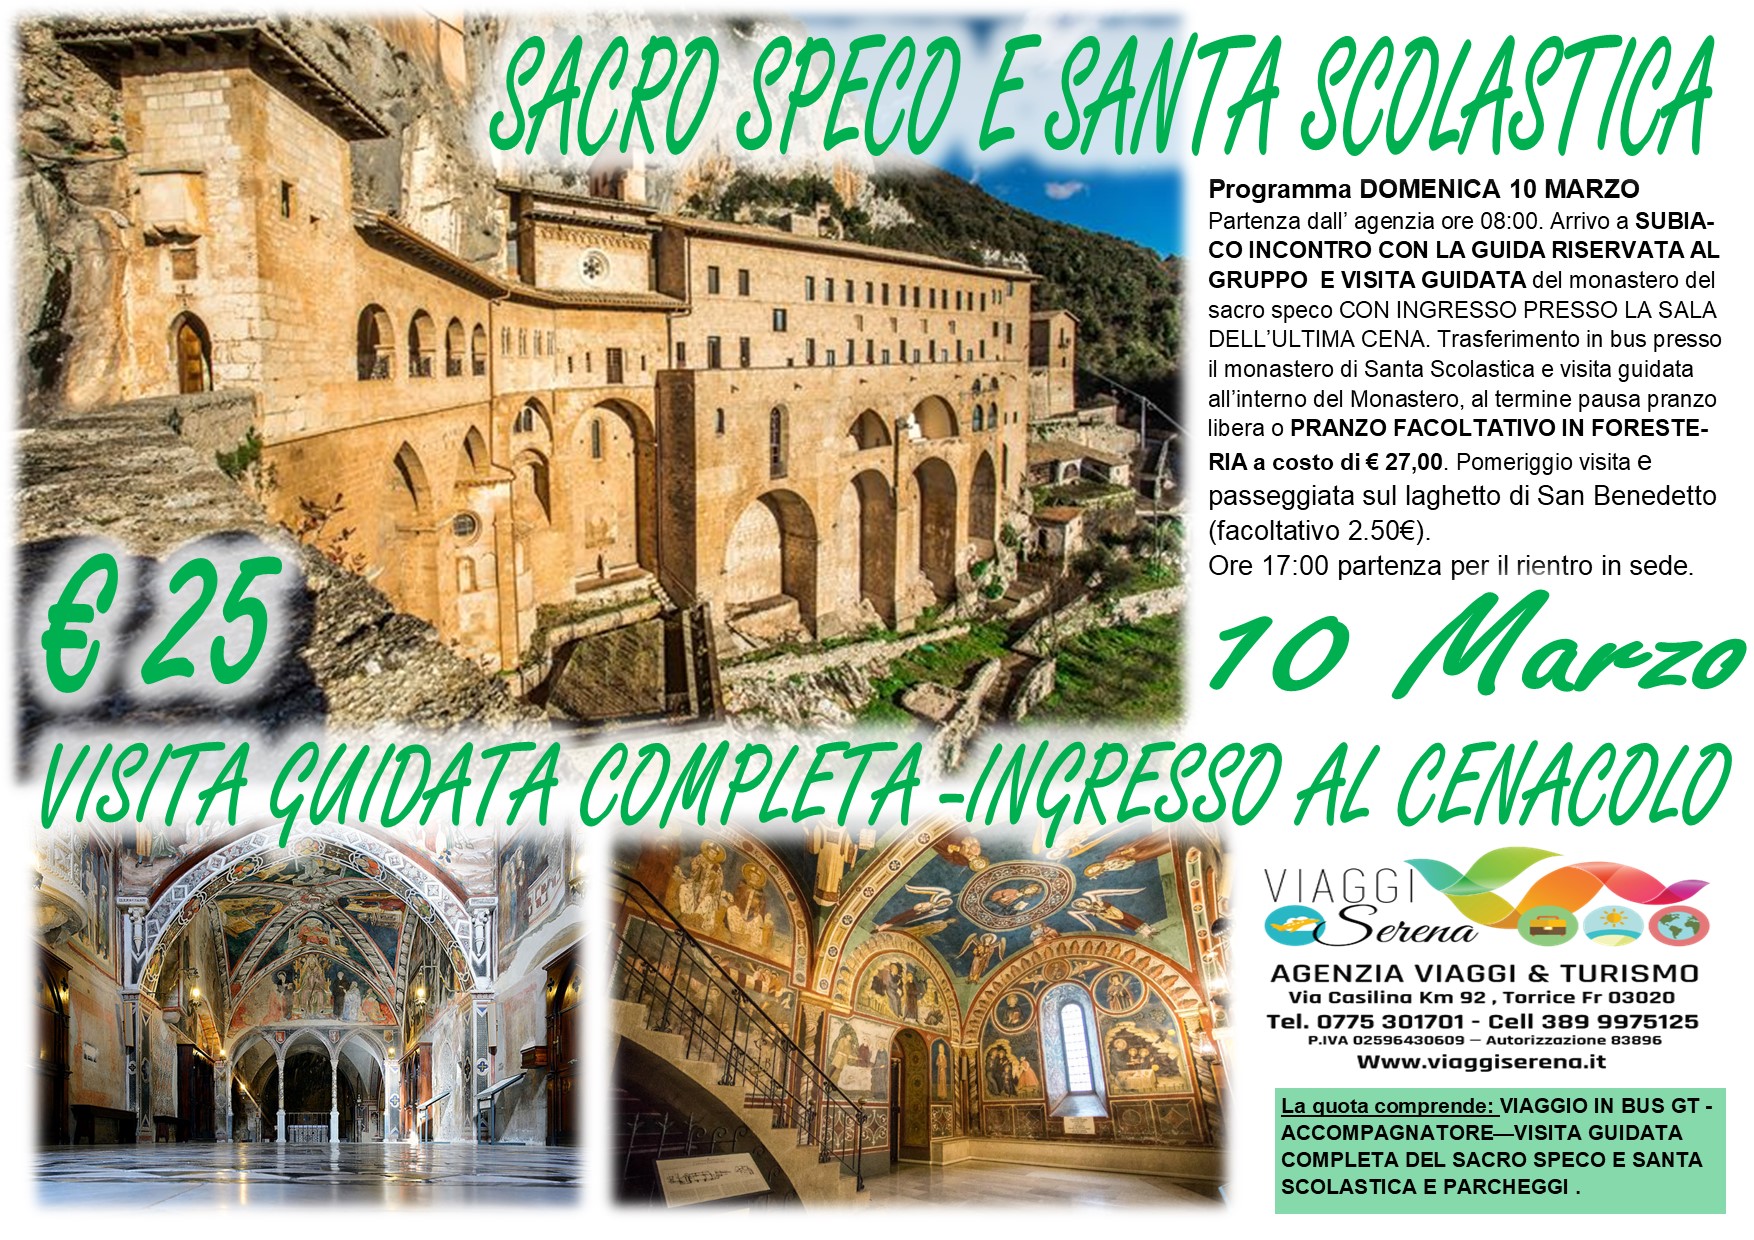 Viaggi di gruppo: Subiaco con Sacro Speco & Santa Scolastica 10 Marzo € 25